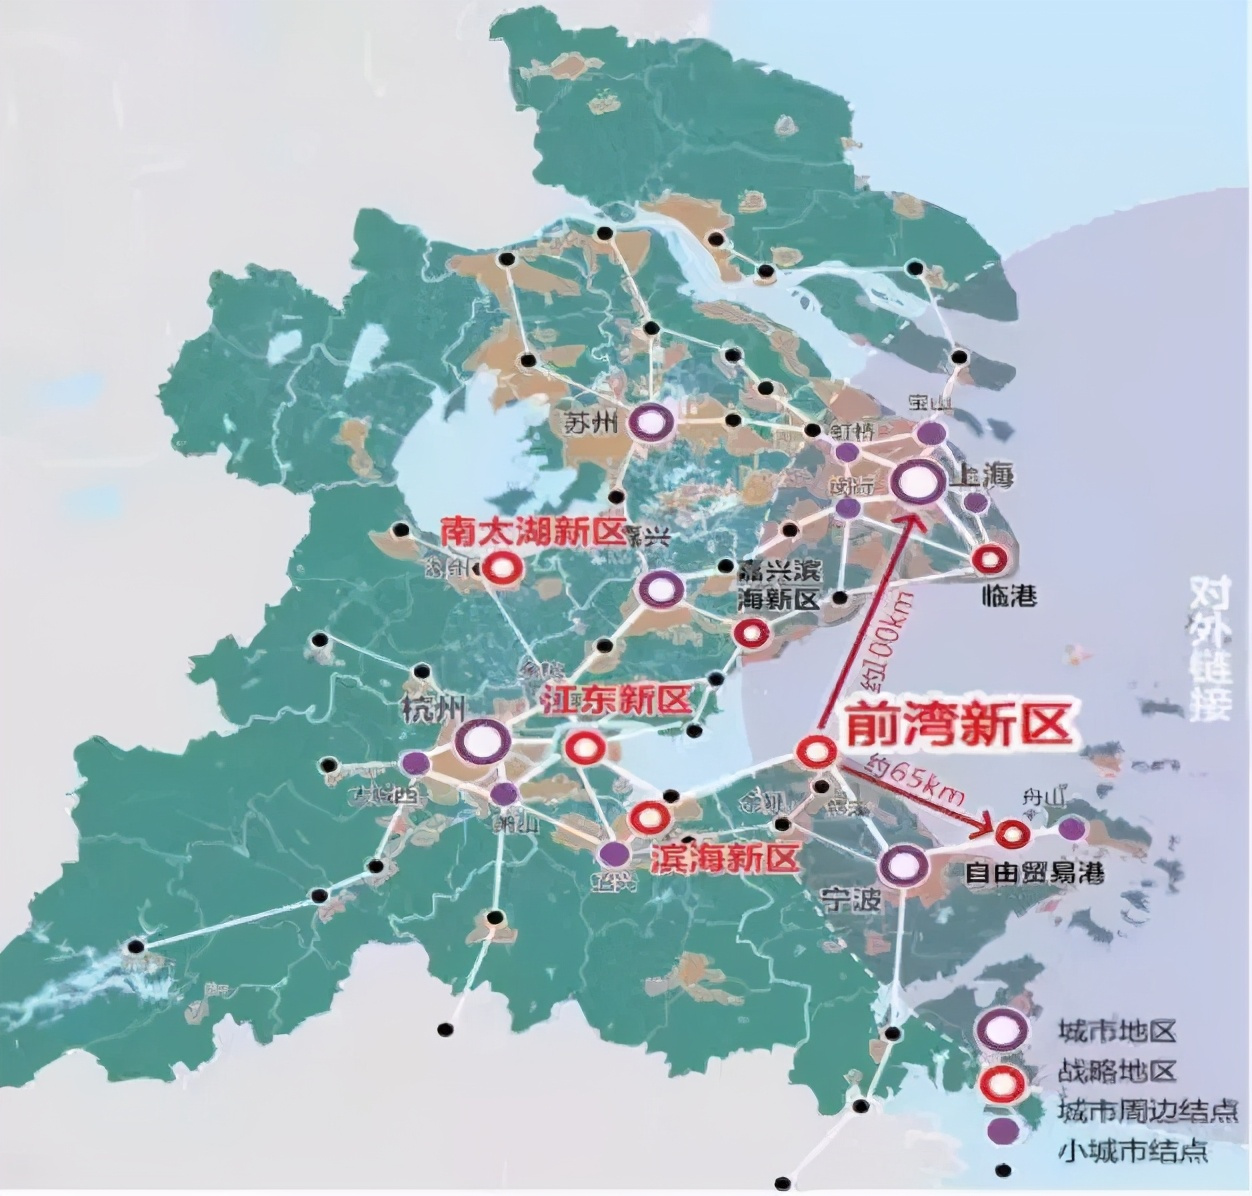 杭州新区划分图片